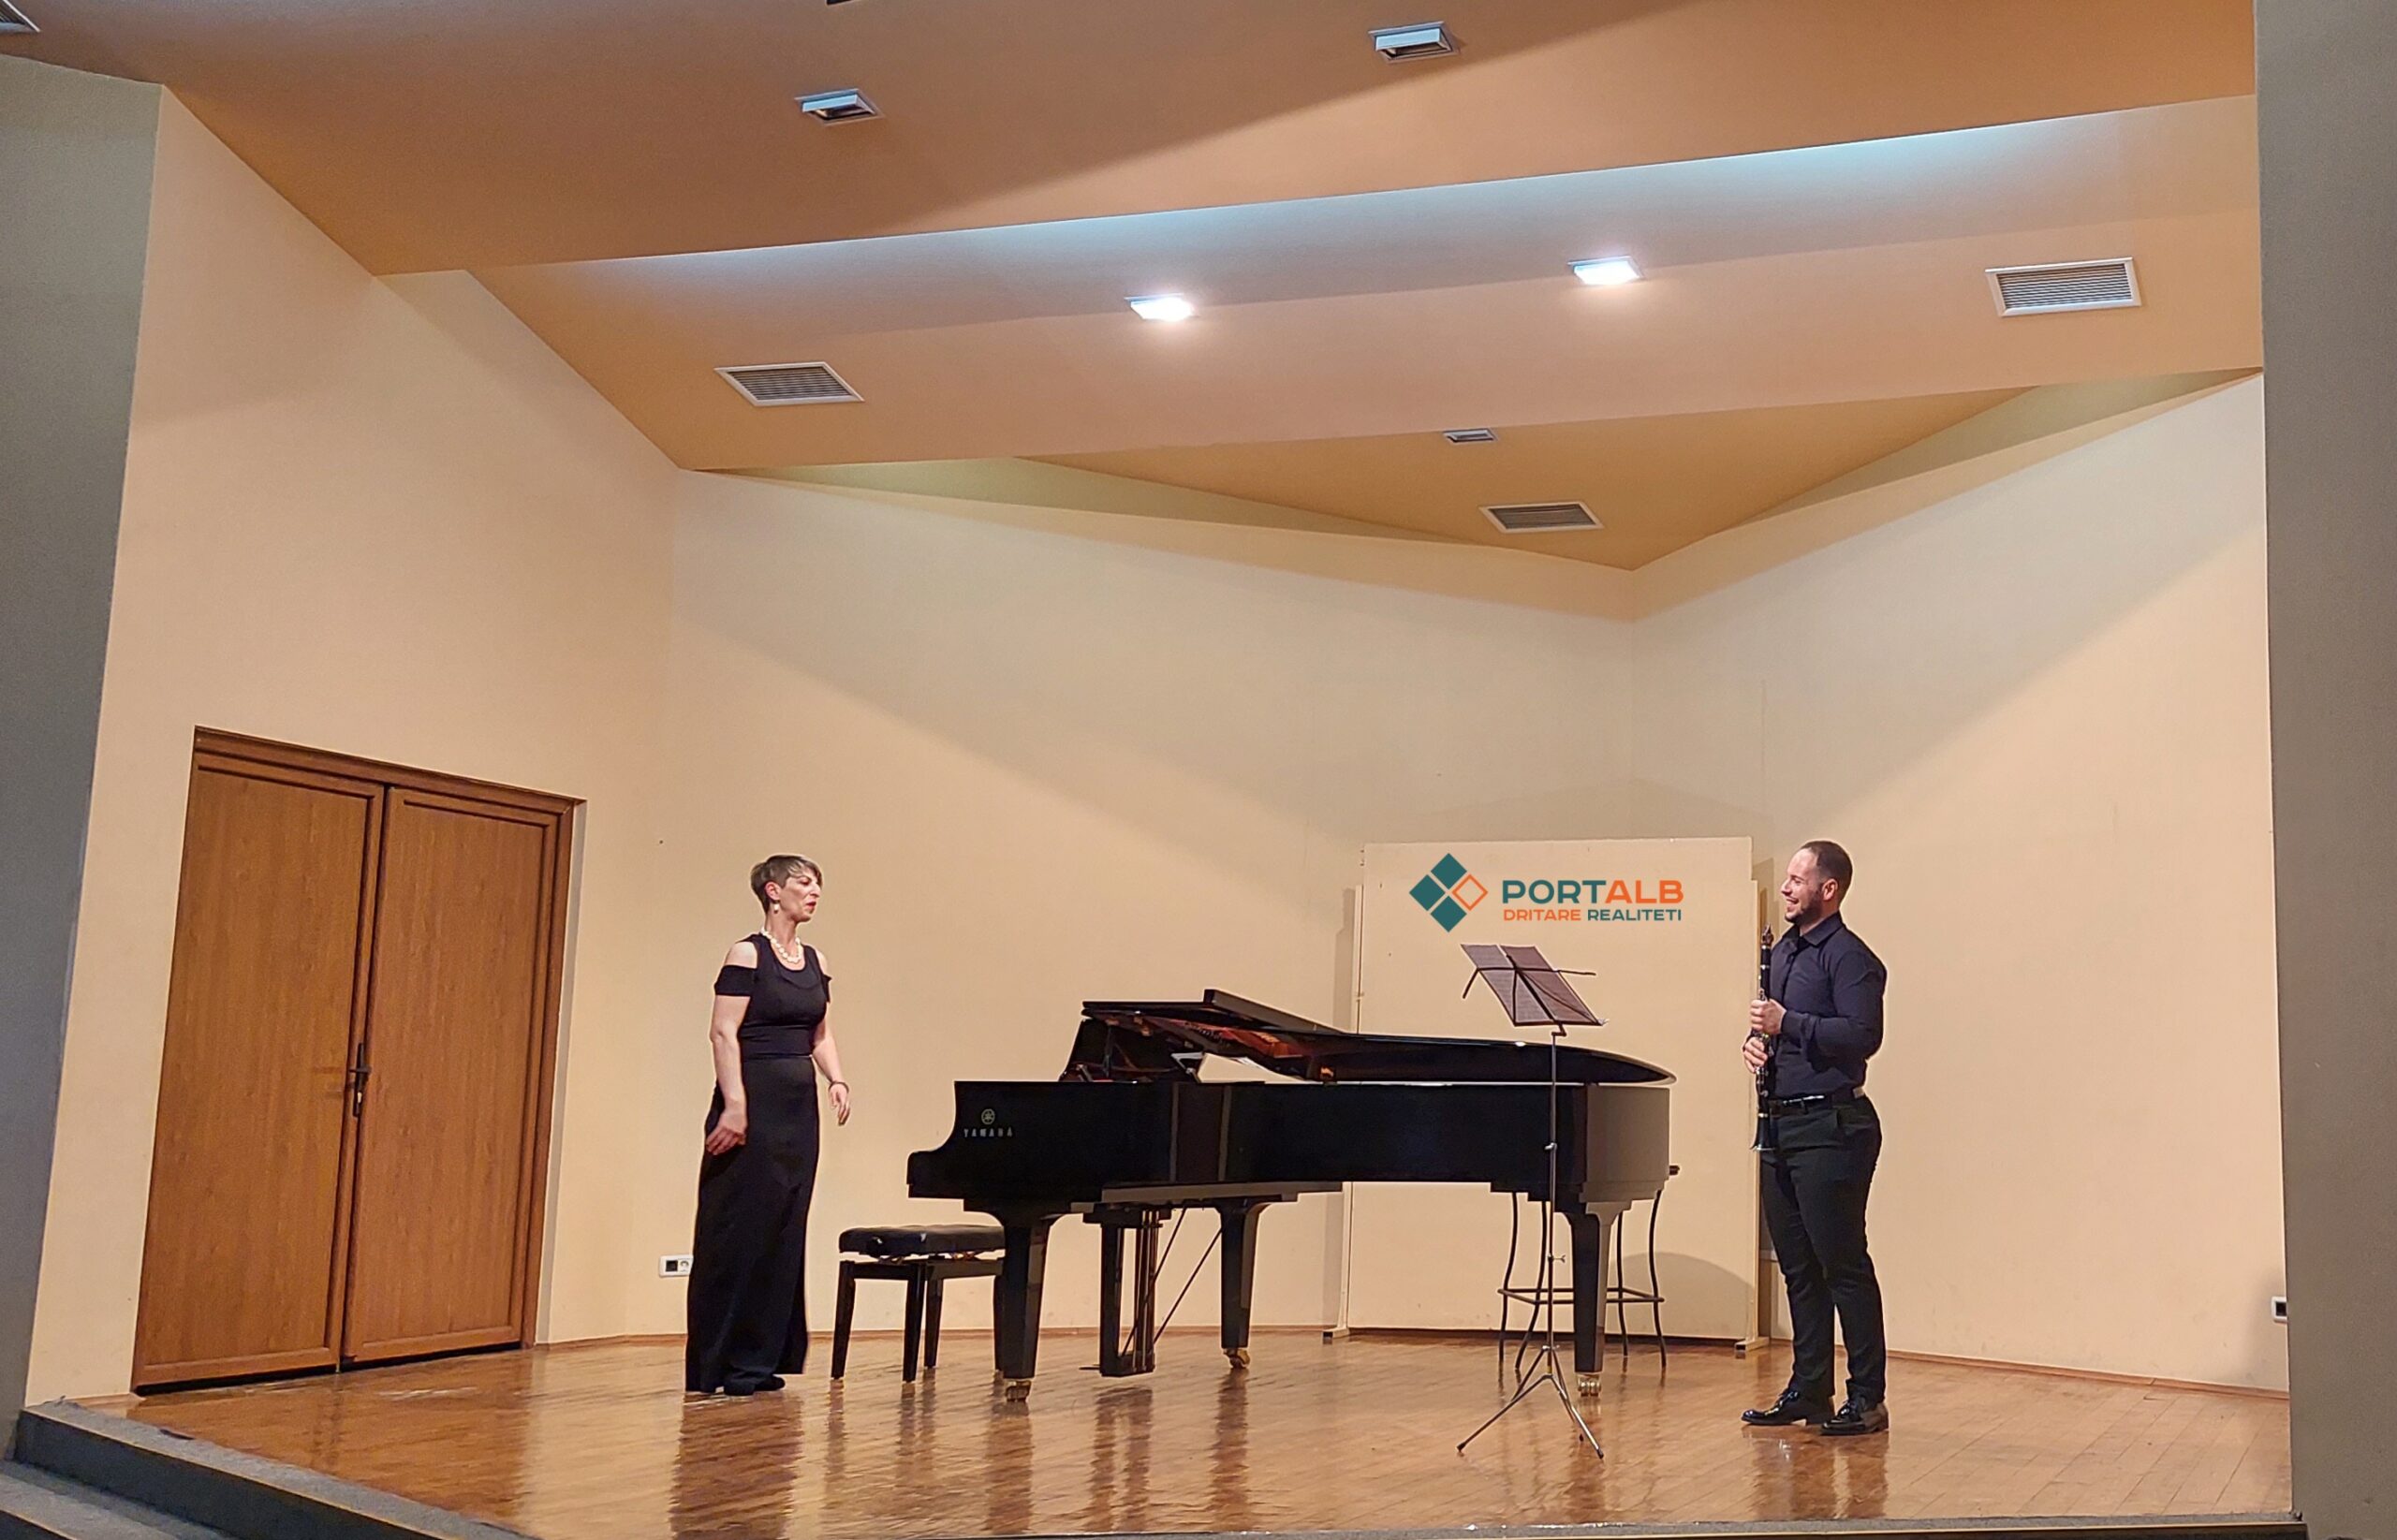 Koncerti i muzikantit Veton Curri në Qendën Kulturore Informative në Shkup. Foto nga Faton Curri / Portalb.mk.